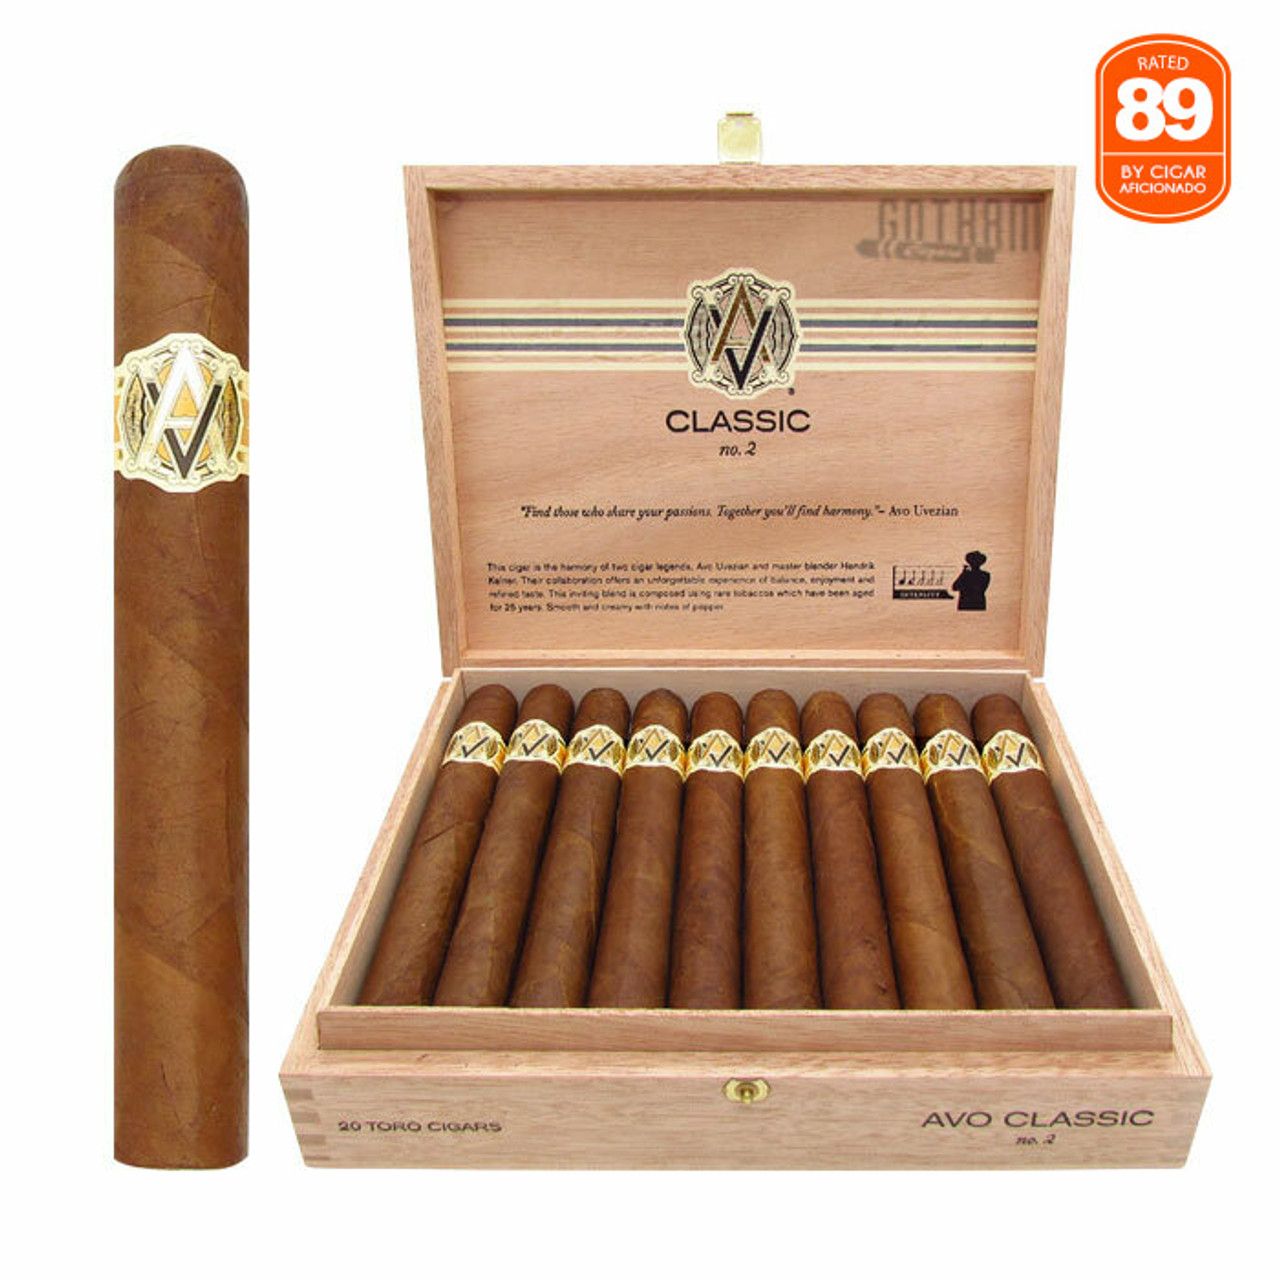 Oliva Prime #2 10-Cigar Sampler